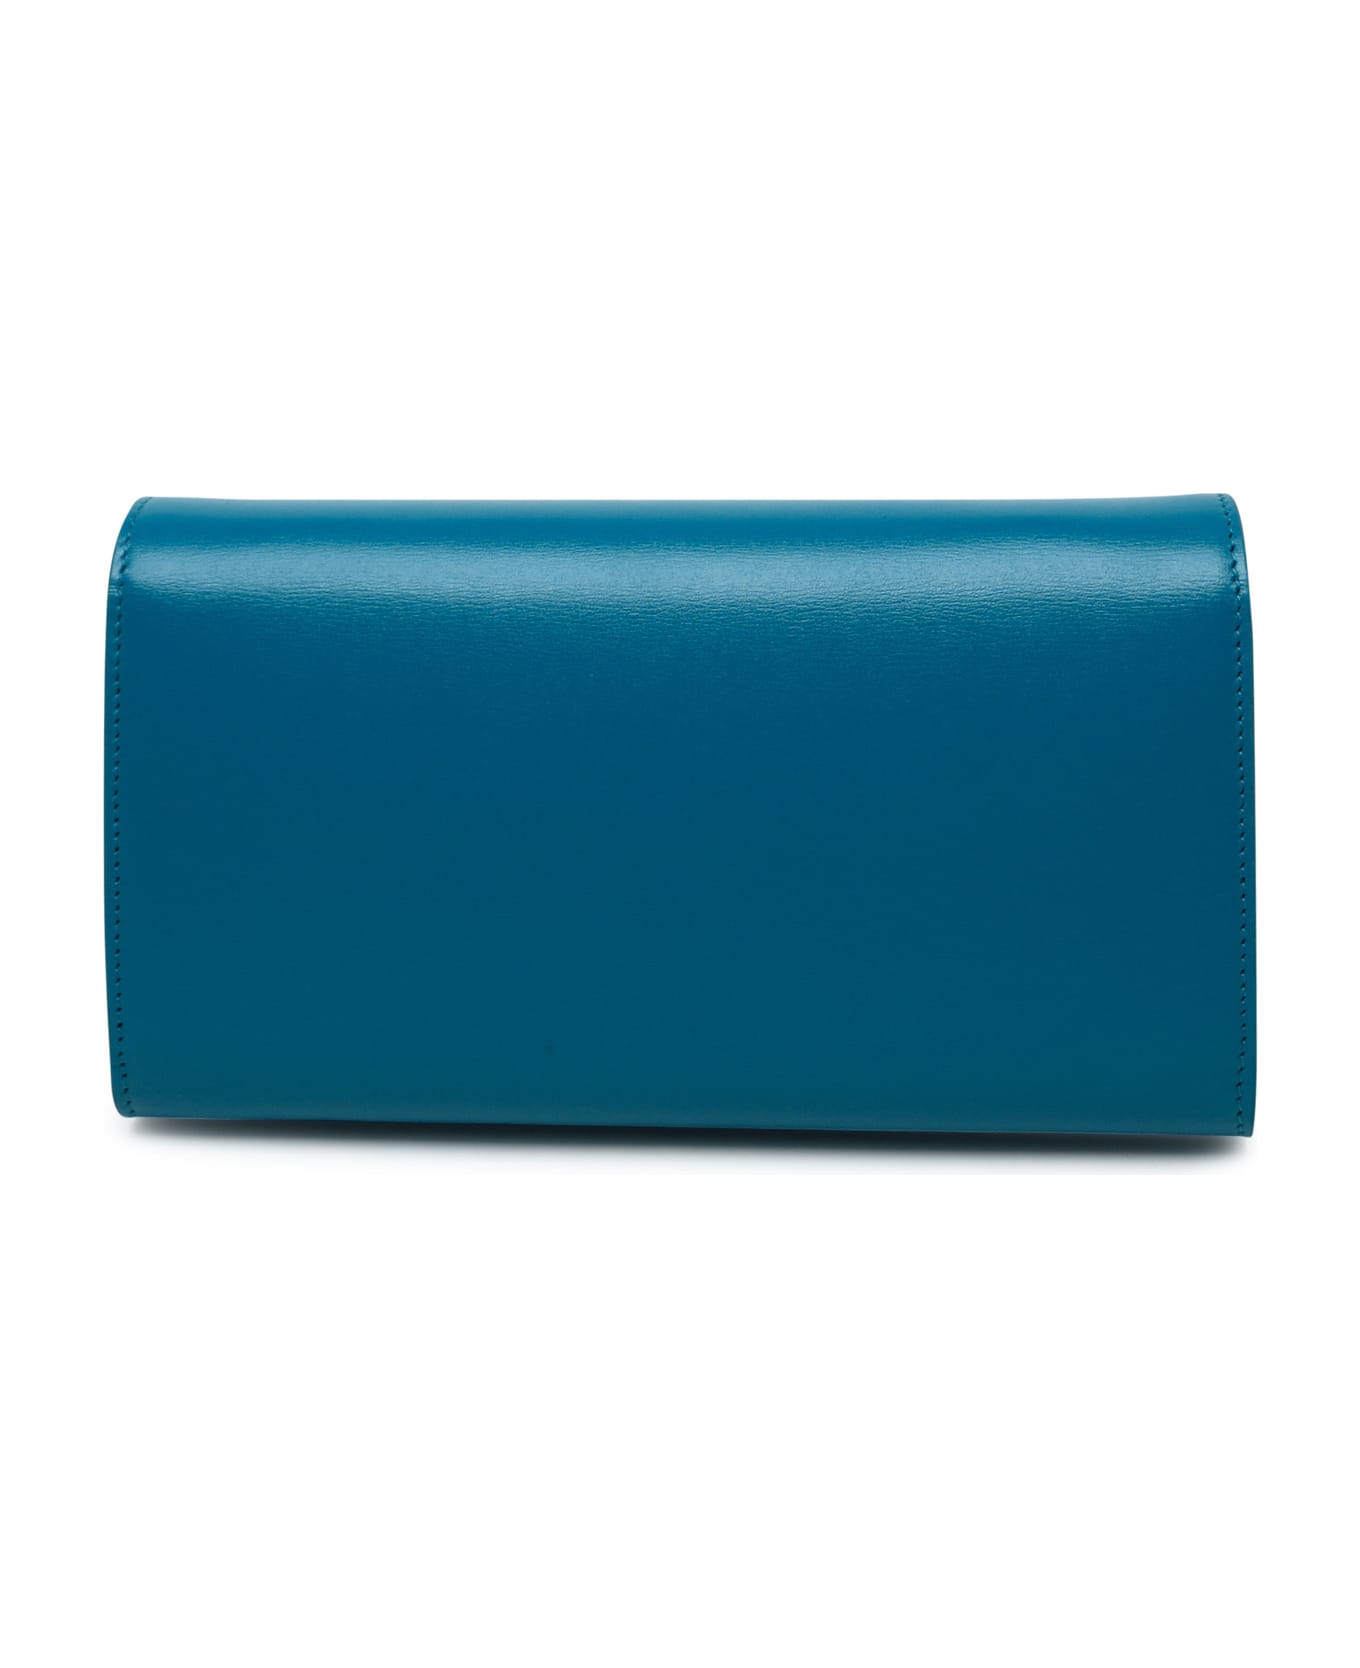 Jil Sander Light Blue Leather All-day Bag - Blue